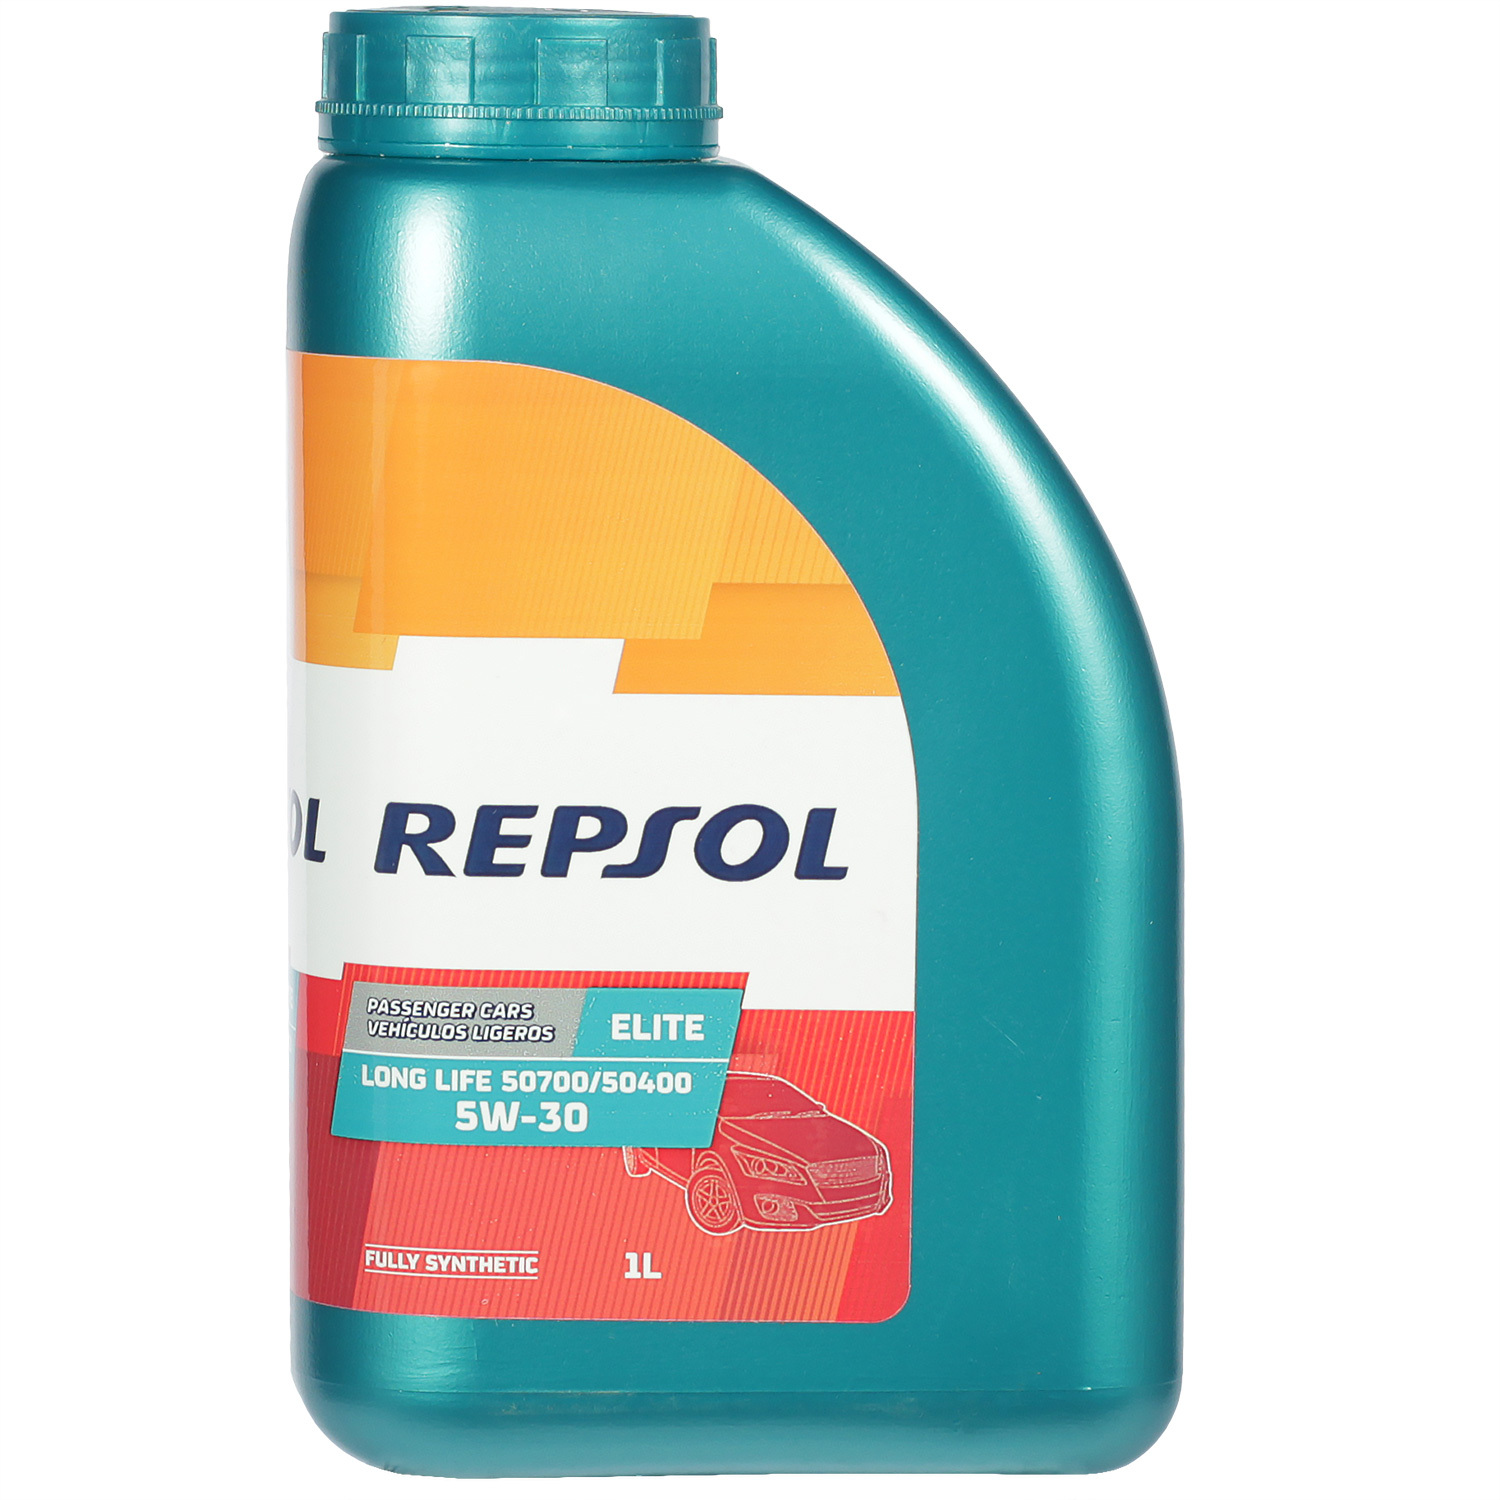 Моторное масло Repsol Elite LONG LIFE 50700/50400 5W-30, 1 л